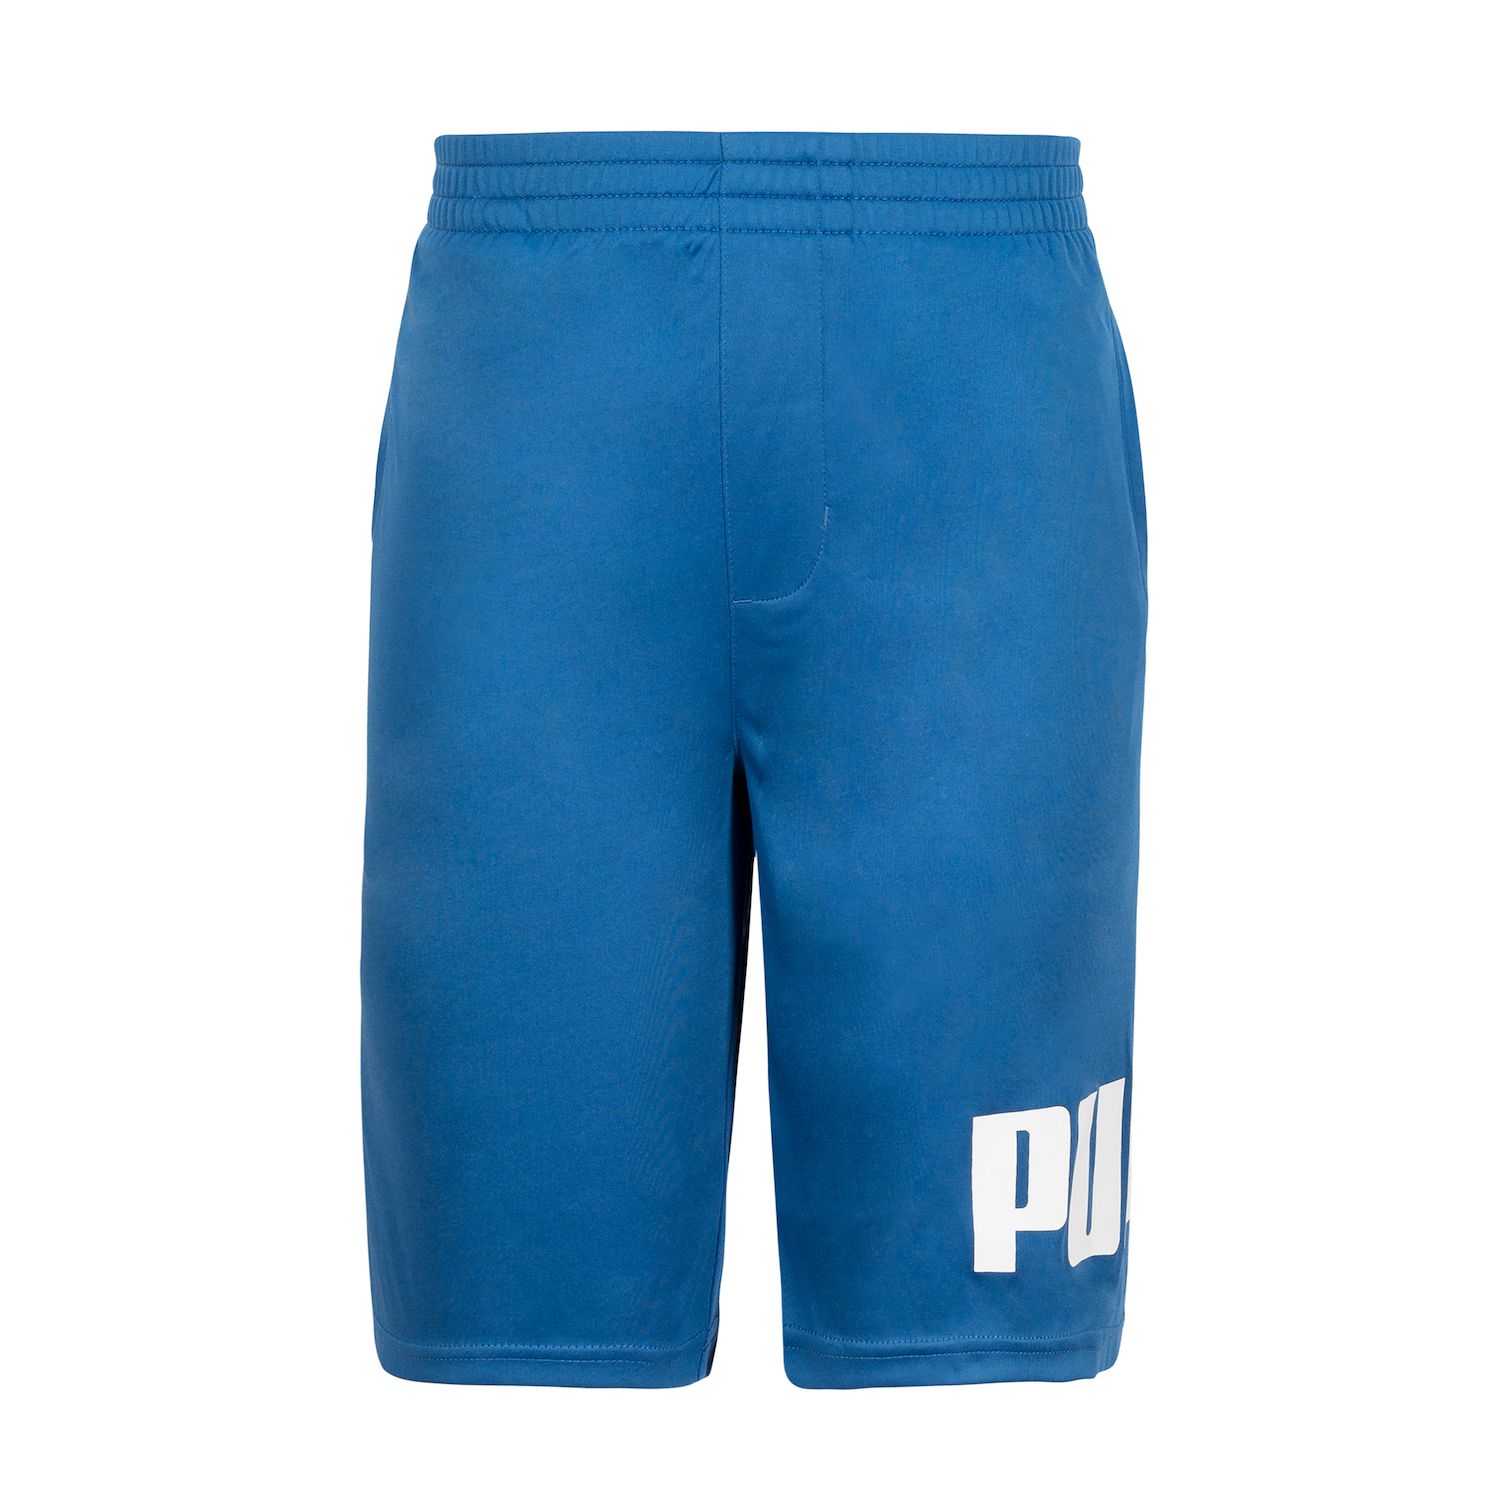 one 8 puma shorts